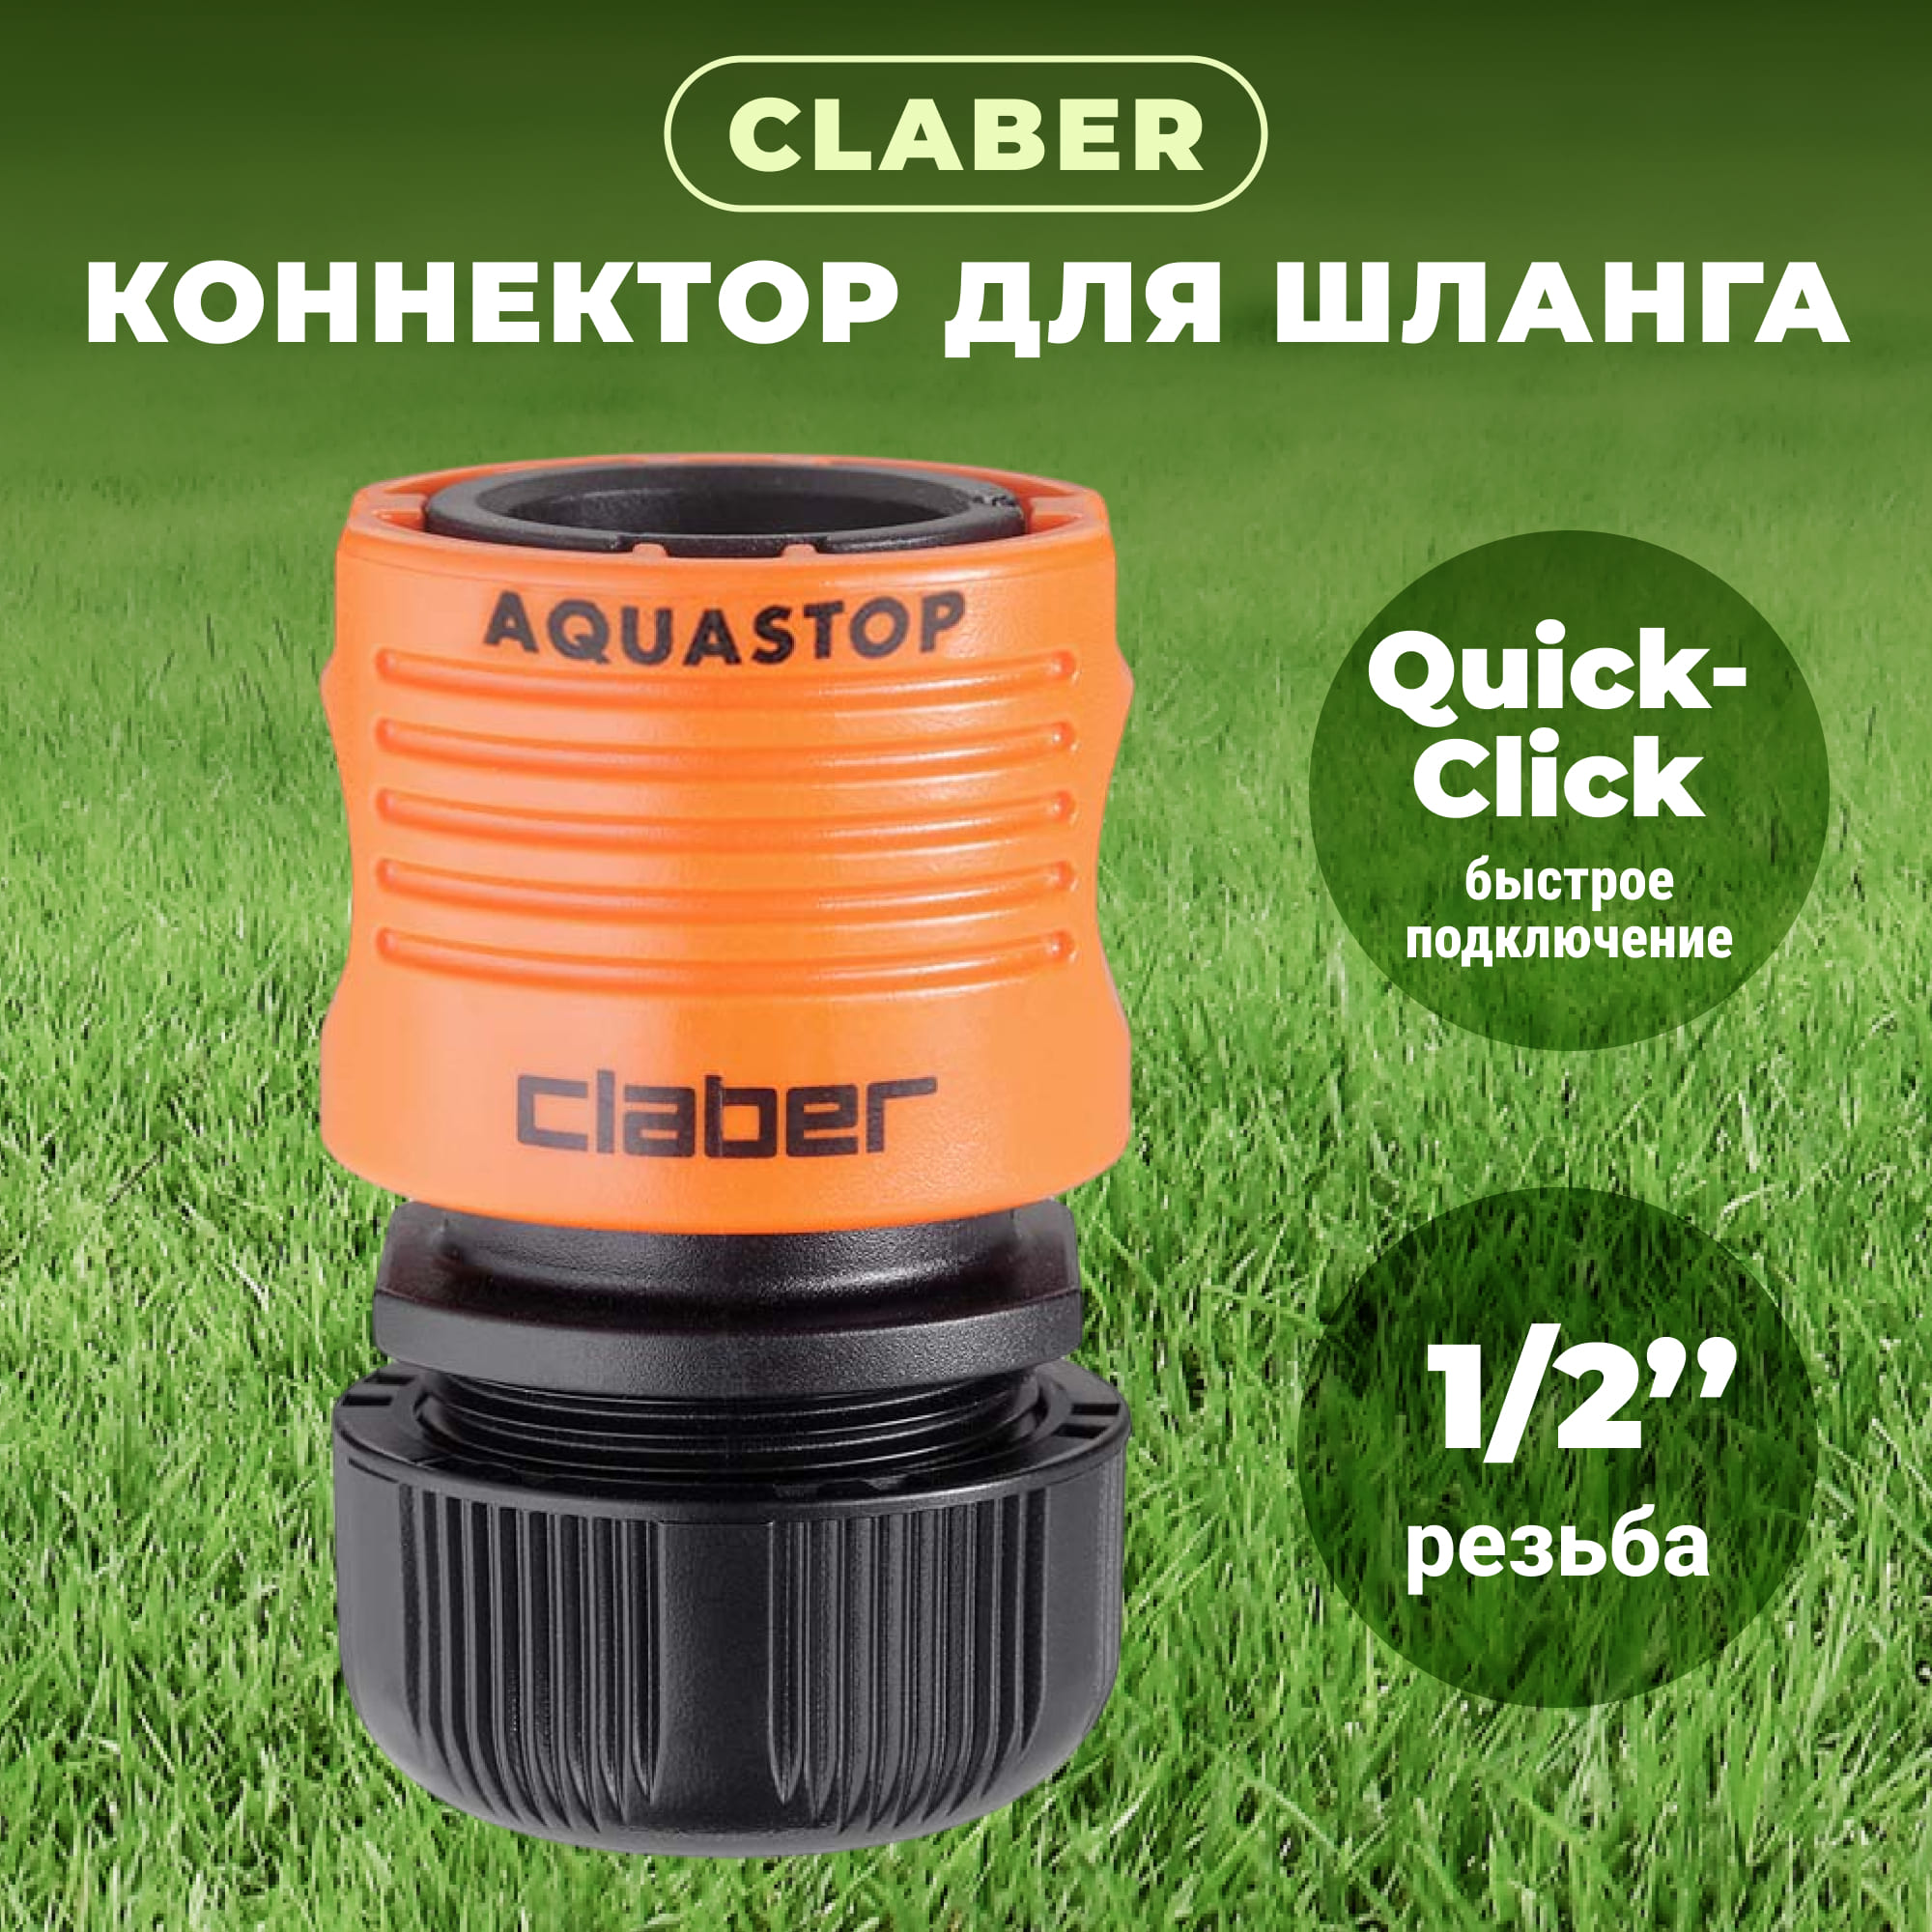 Коннектор Claber для шланга 1/2 с аквастопом 86030000, цвет черный - фото 2